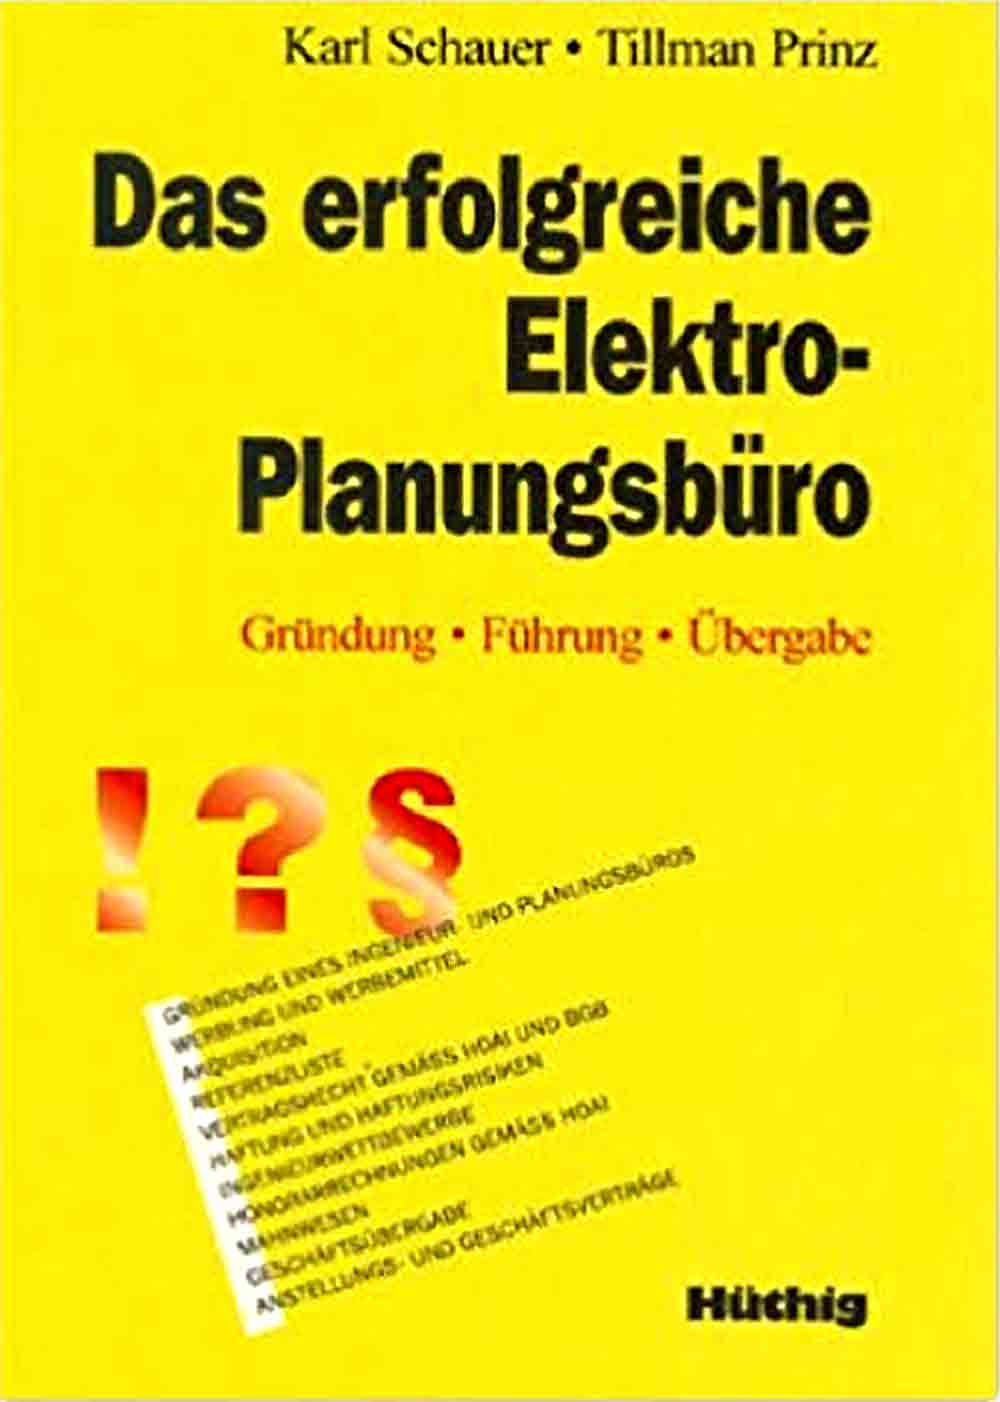 Planung elektrischer Anlagen Karl Schauer und Wolfgang Aicher